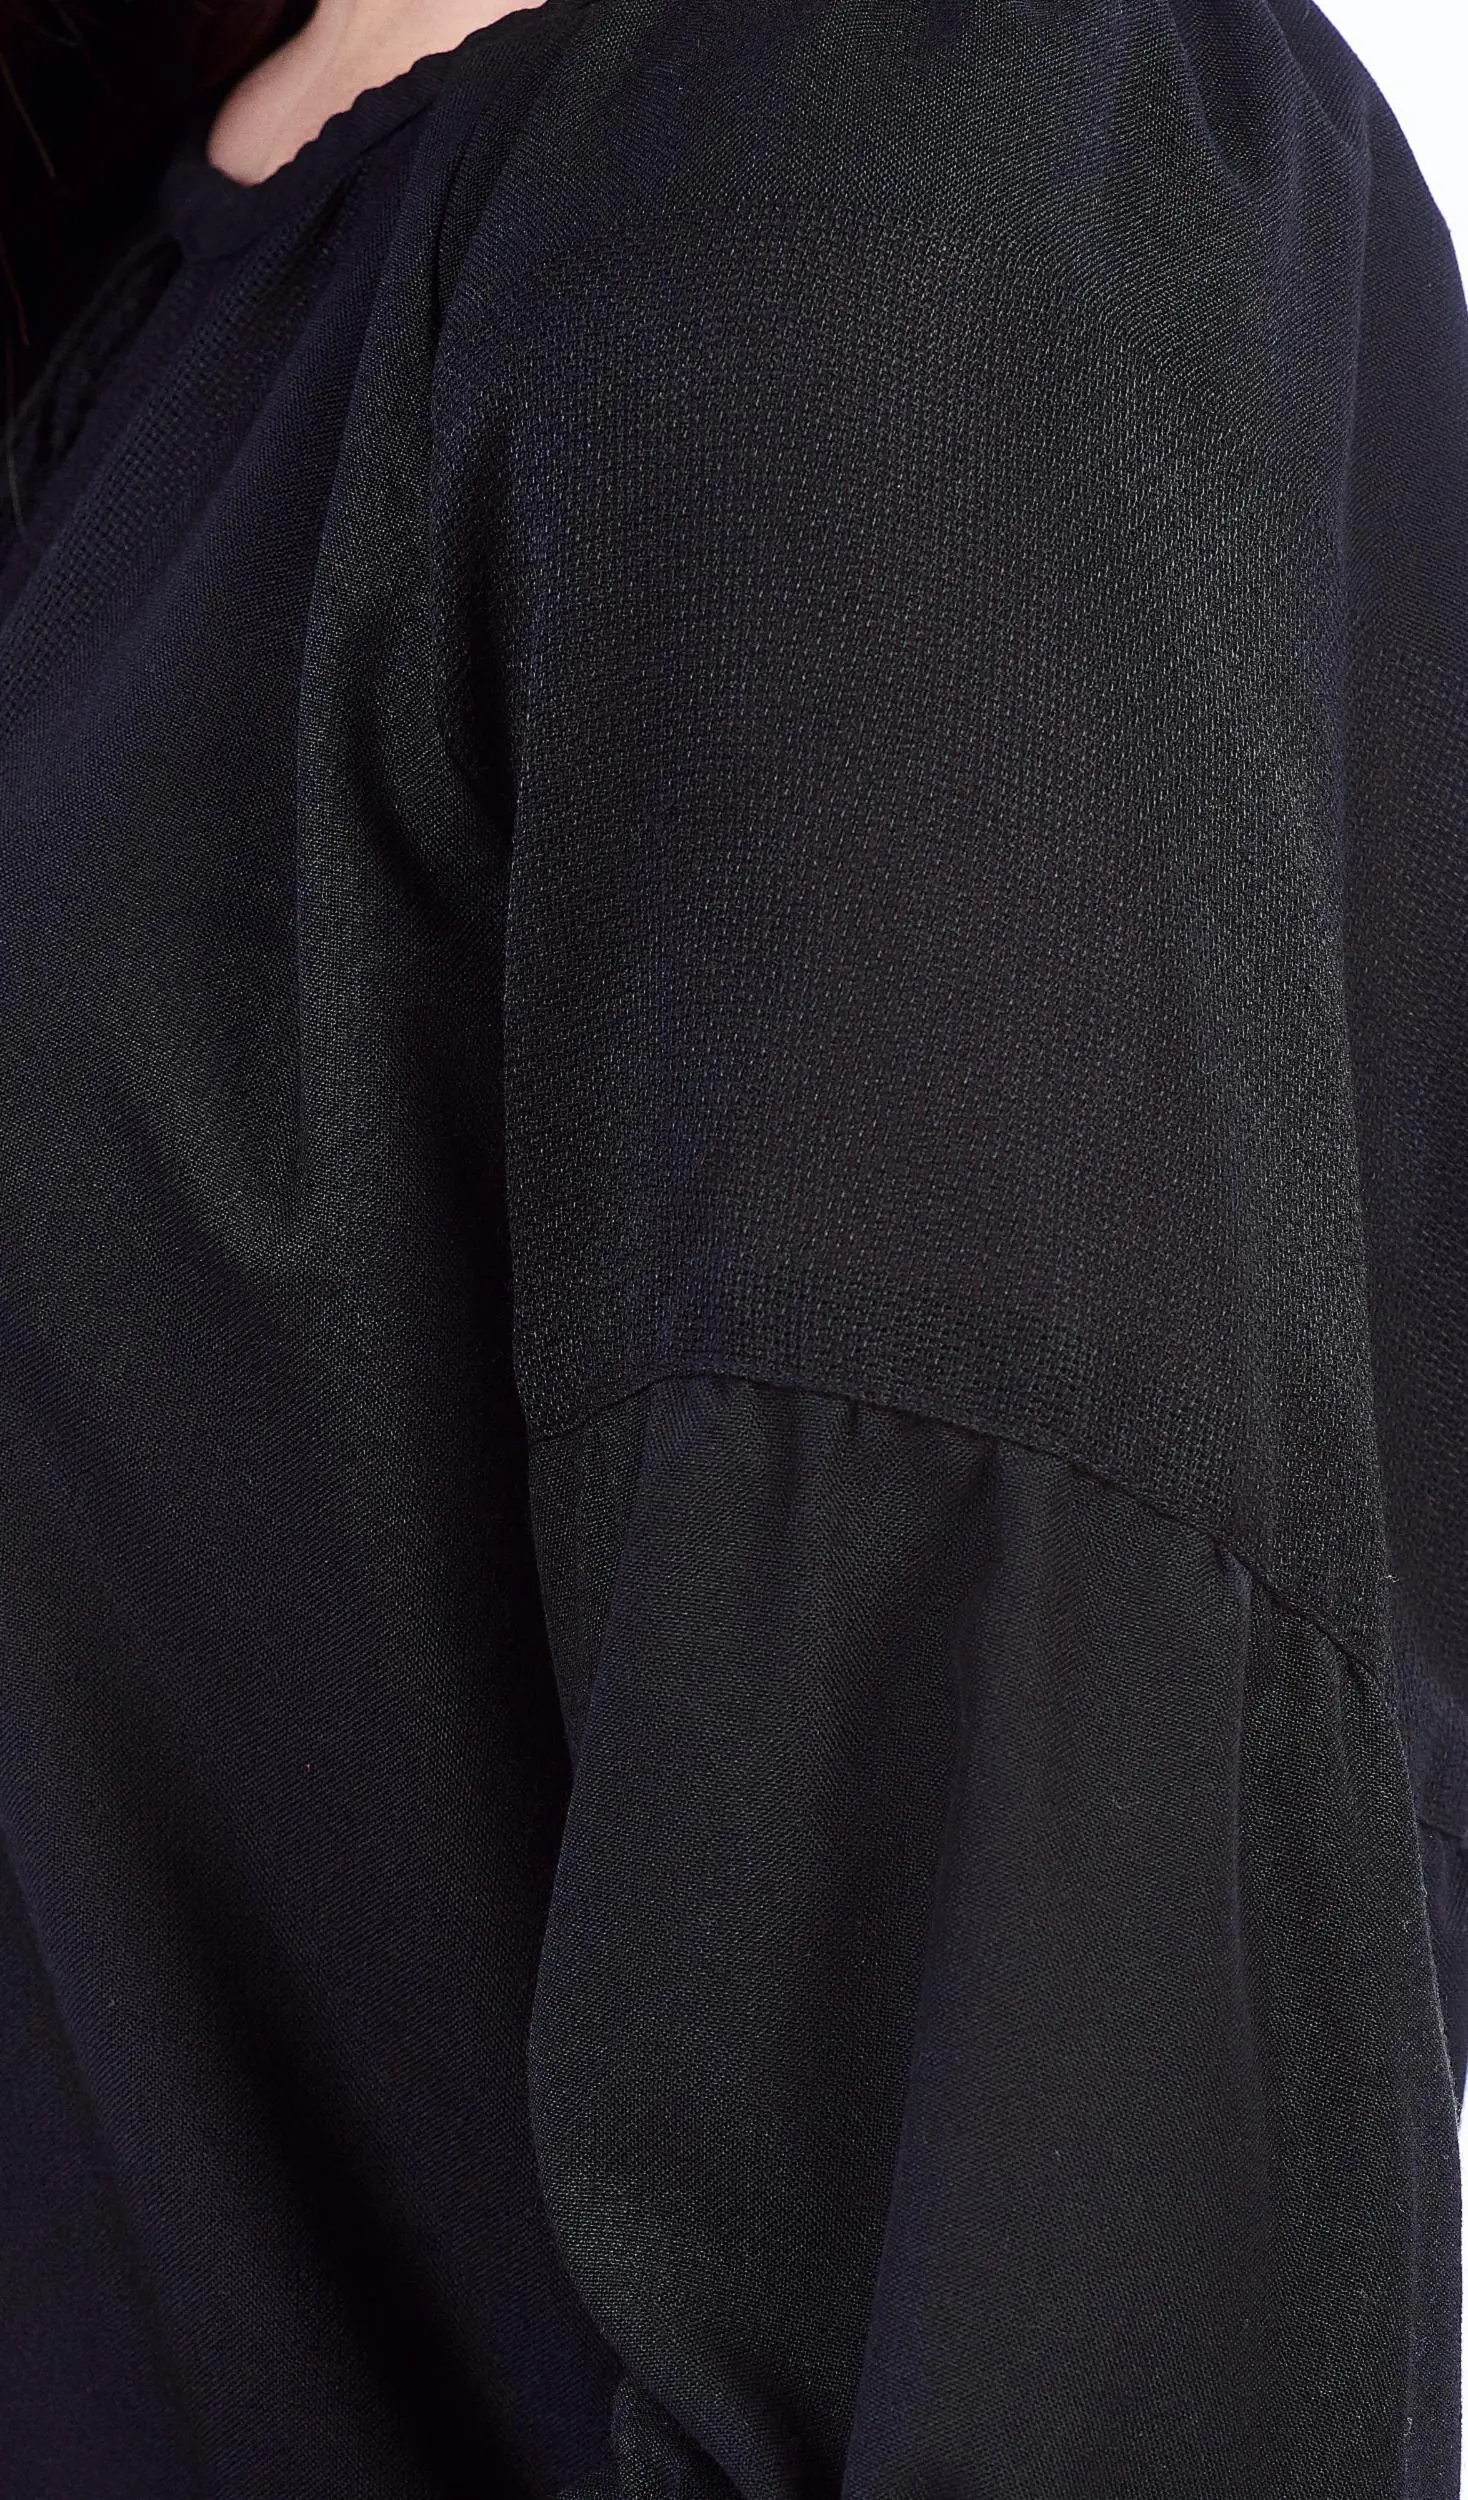 ТПК-172 03-02/09 Сорочка жіноча під вишивку, чорна, 3/4 рукав, розмір 54